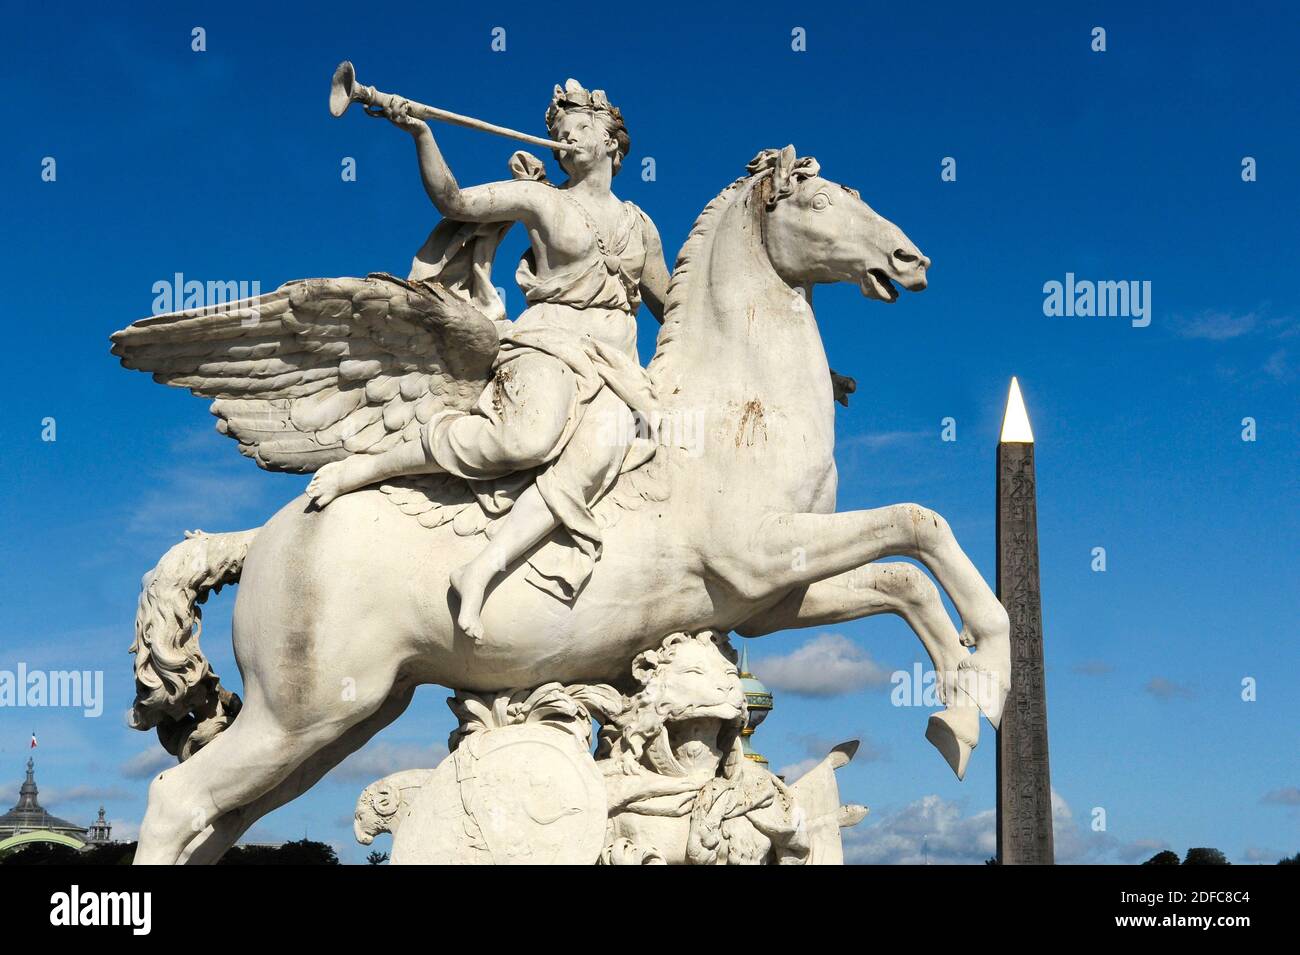 France, Paris, région classée au patrimoine mondial de l'UNESCO, Mercure à cheval sur Pegasus et l'obélisque de la Concorde Banque D'Images